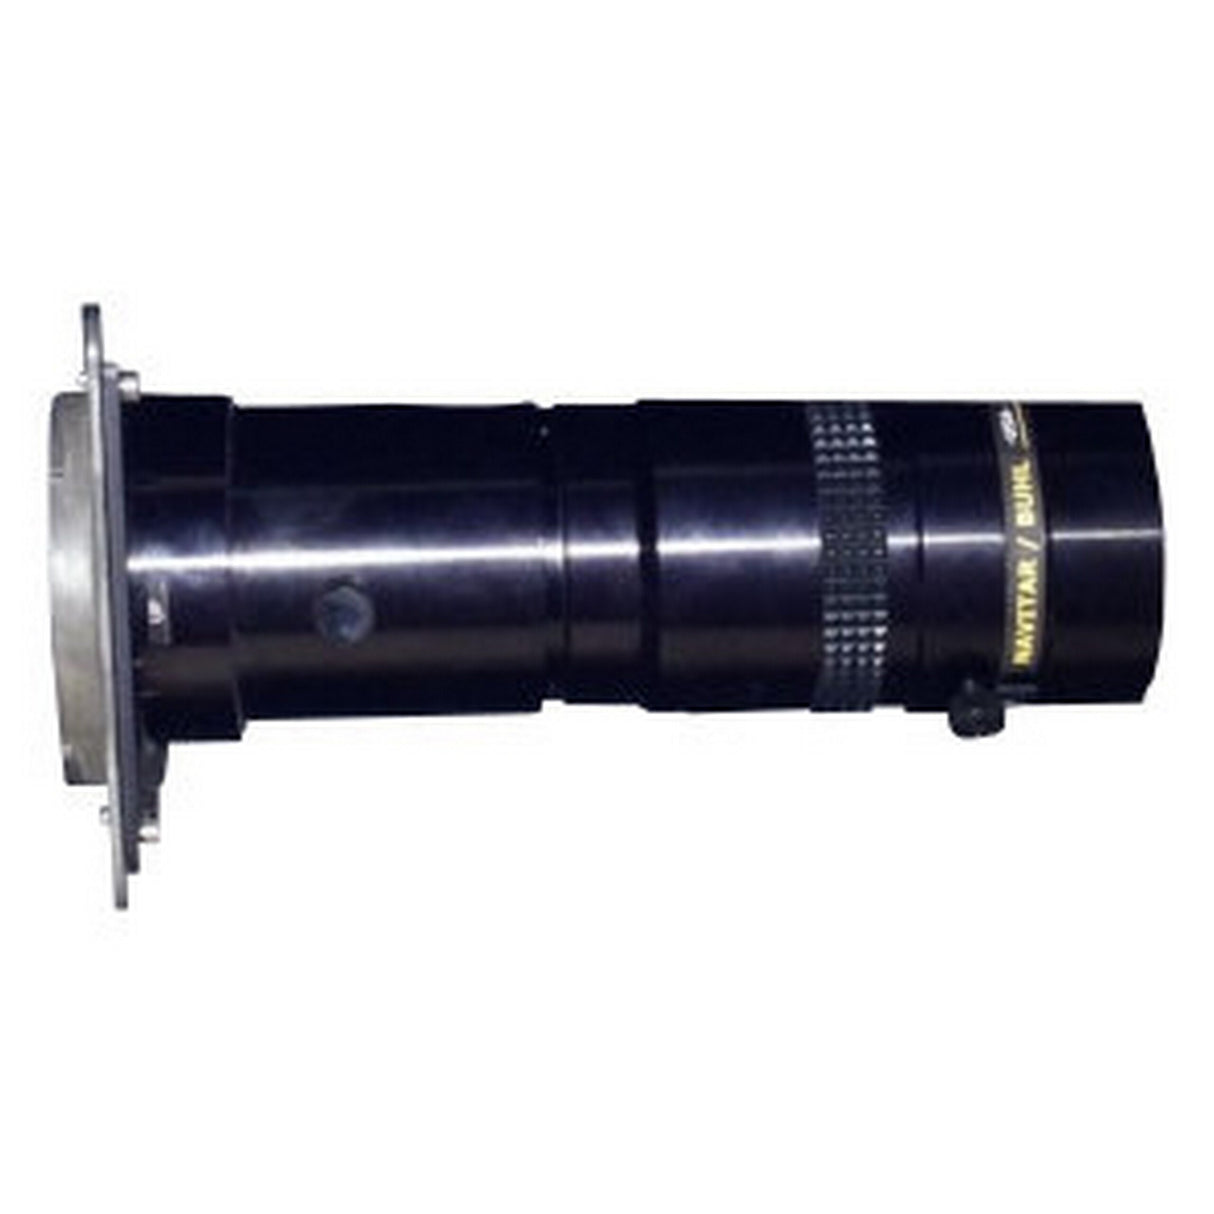 Eiki 0001-5045 Manual Zoom and Focus Lens for EK-820U, EK-815U, EK-810U, EK-811W, EK-625U, EK-623U, EK-620U, EK-621W